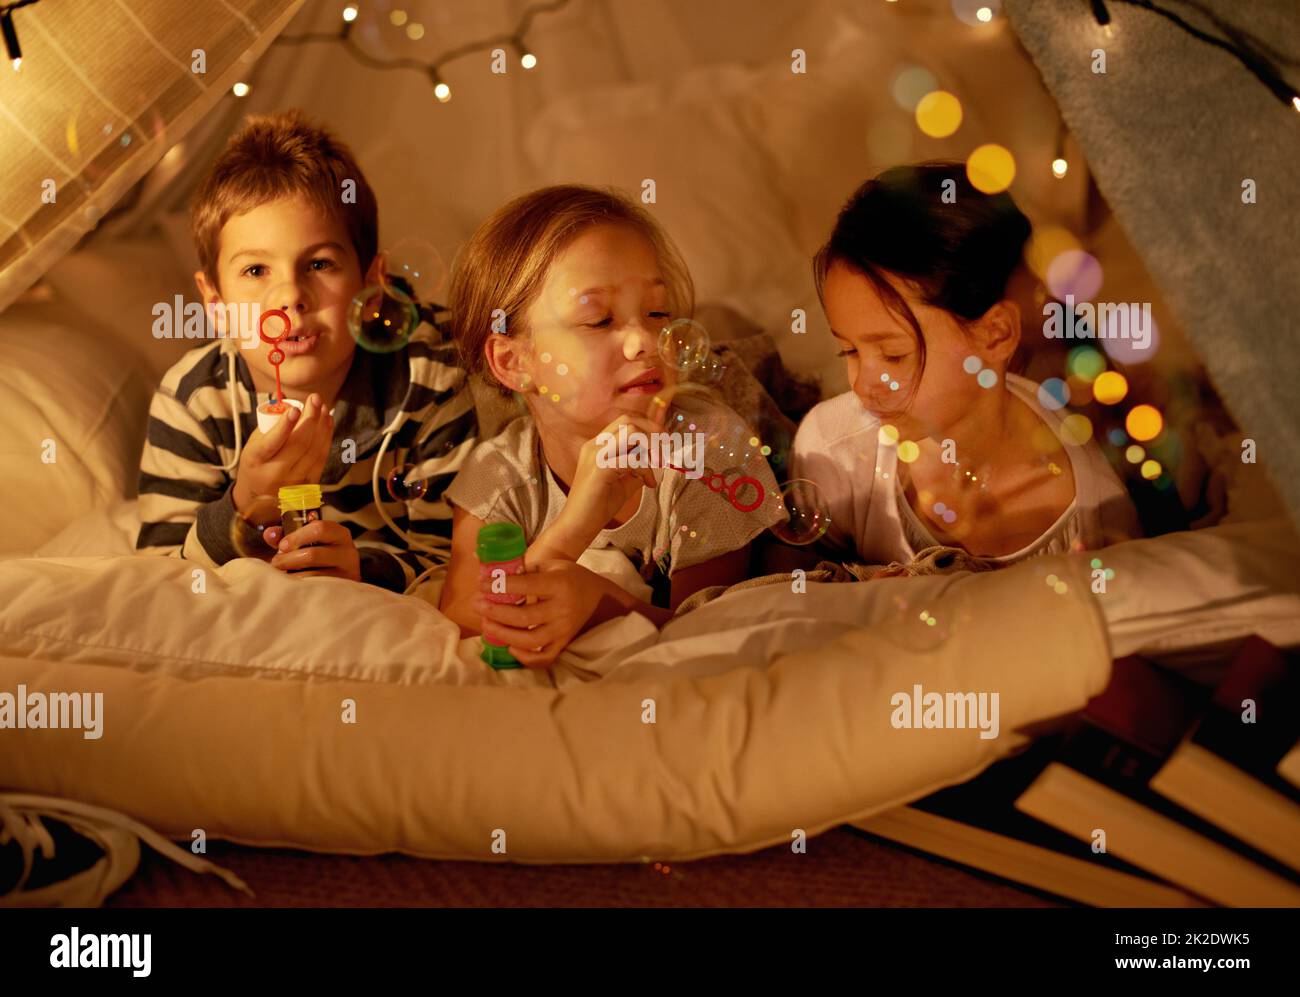 Camping im Schlafzimmer. Aufnahme von drei kleinen Kindern in einer Decke Fort Blasen blasen. Stockfoto